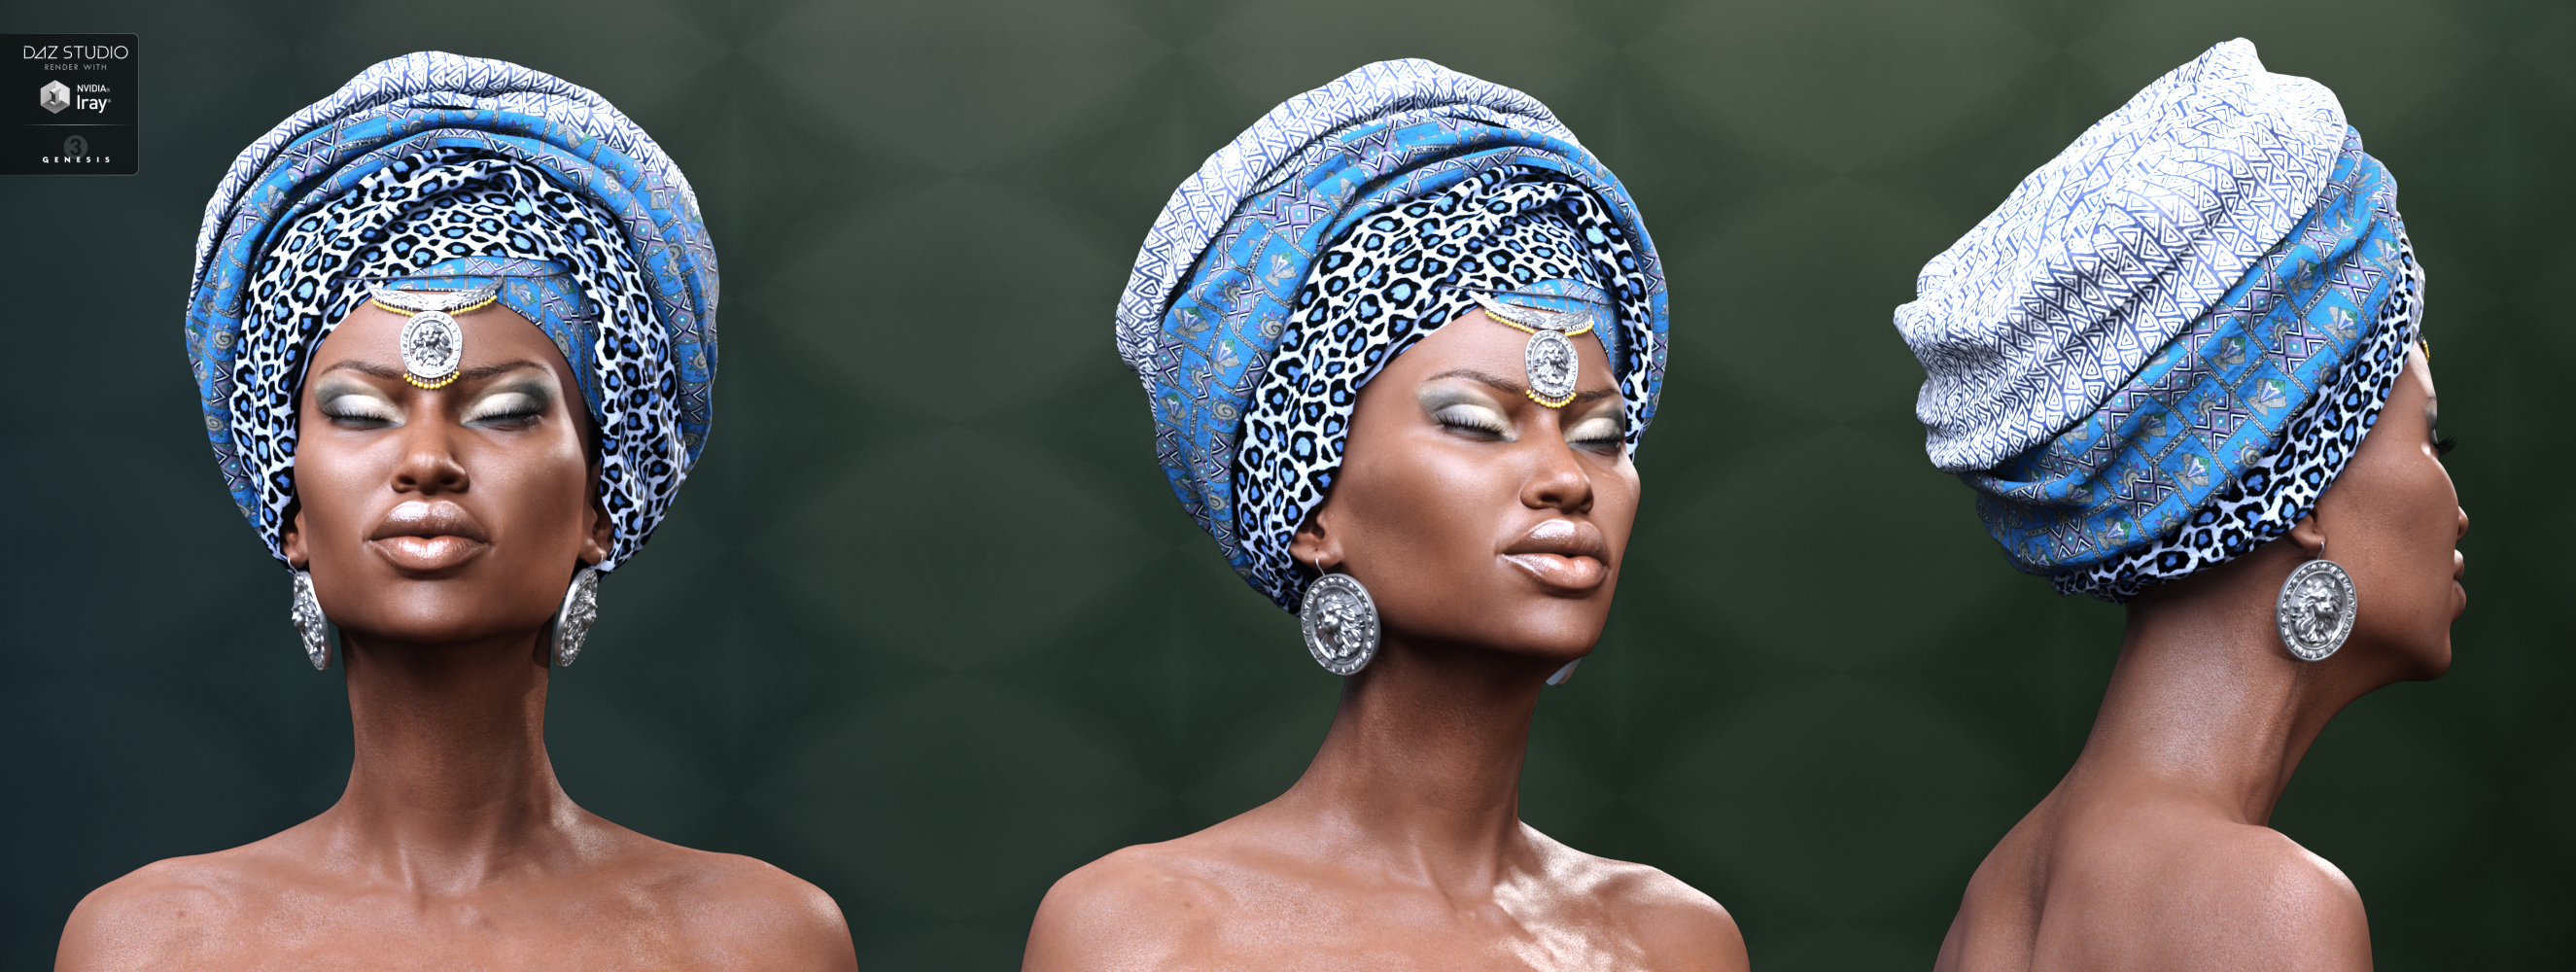 African Headwear for Genesis 3 Female(s) by: Neikdian, 3D Models by Daz 3D